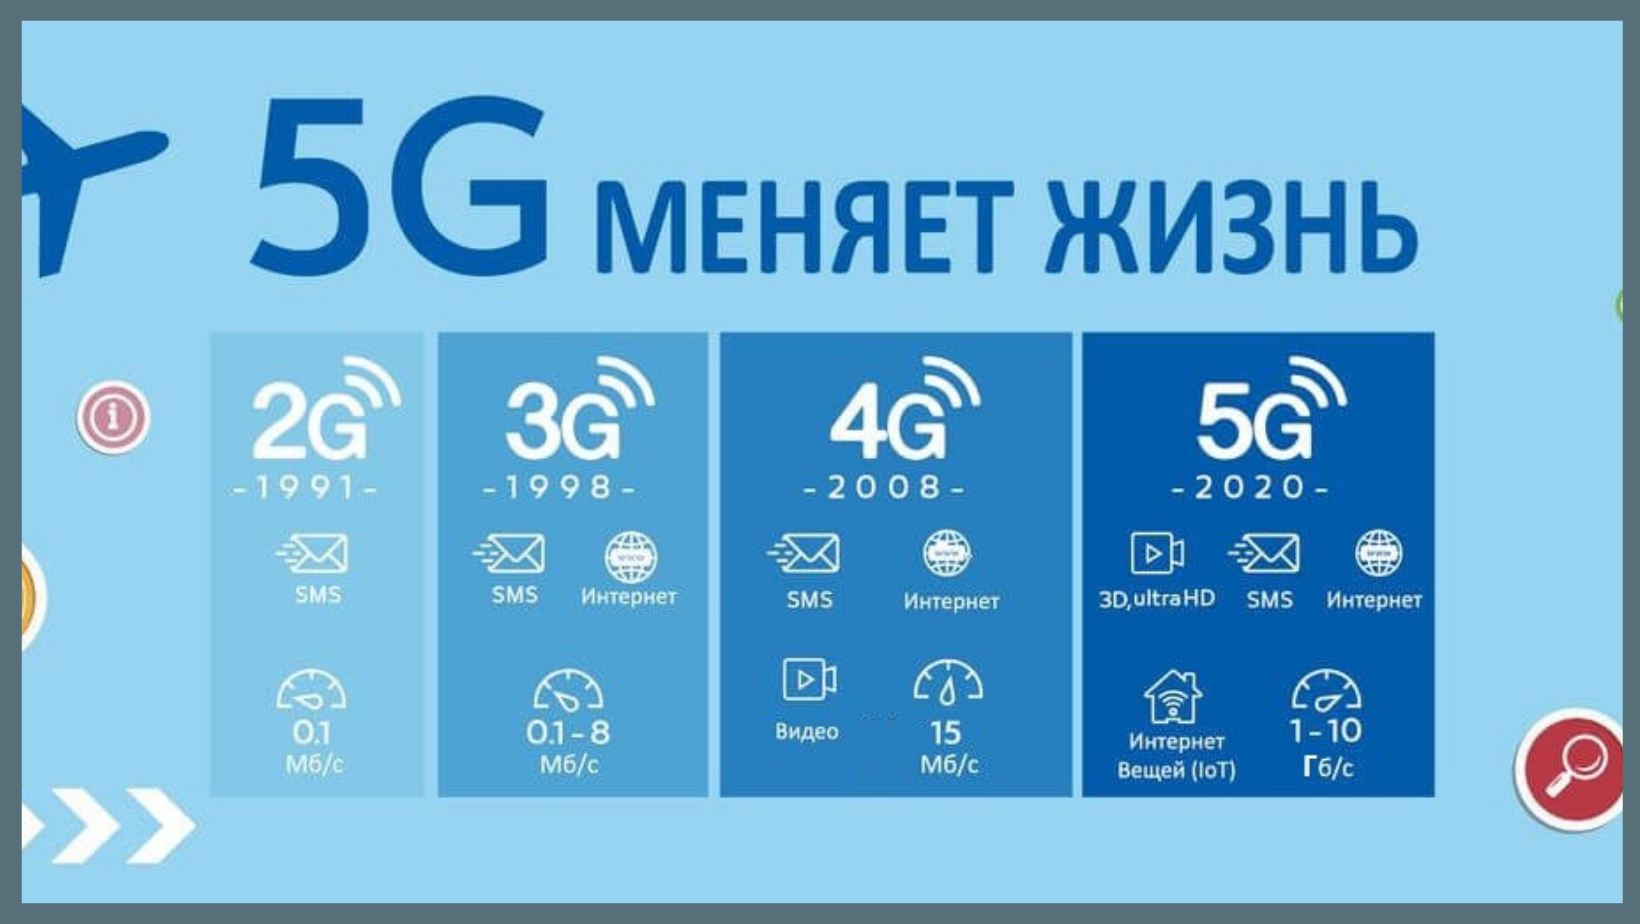 Технологии сотовой связи 2g 3g 4g. Поколения сотовой связи 2g 3g и 4g. Что такое 2g 3g 4g в сотовой связи. Скорости мобильного интернета 2g 3g 4g. Интернет нового поколения